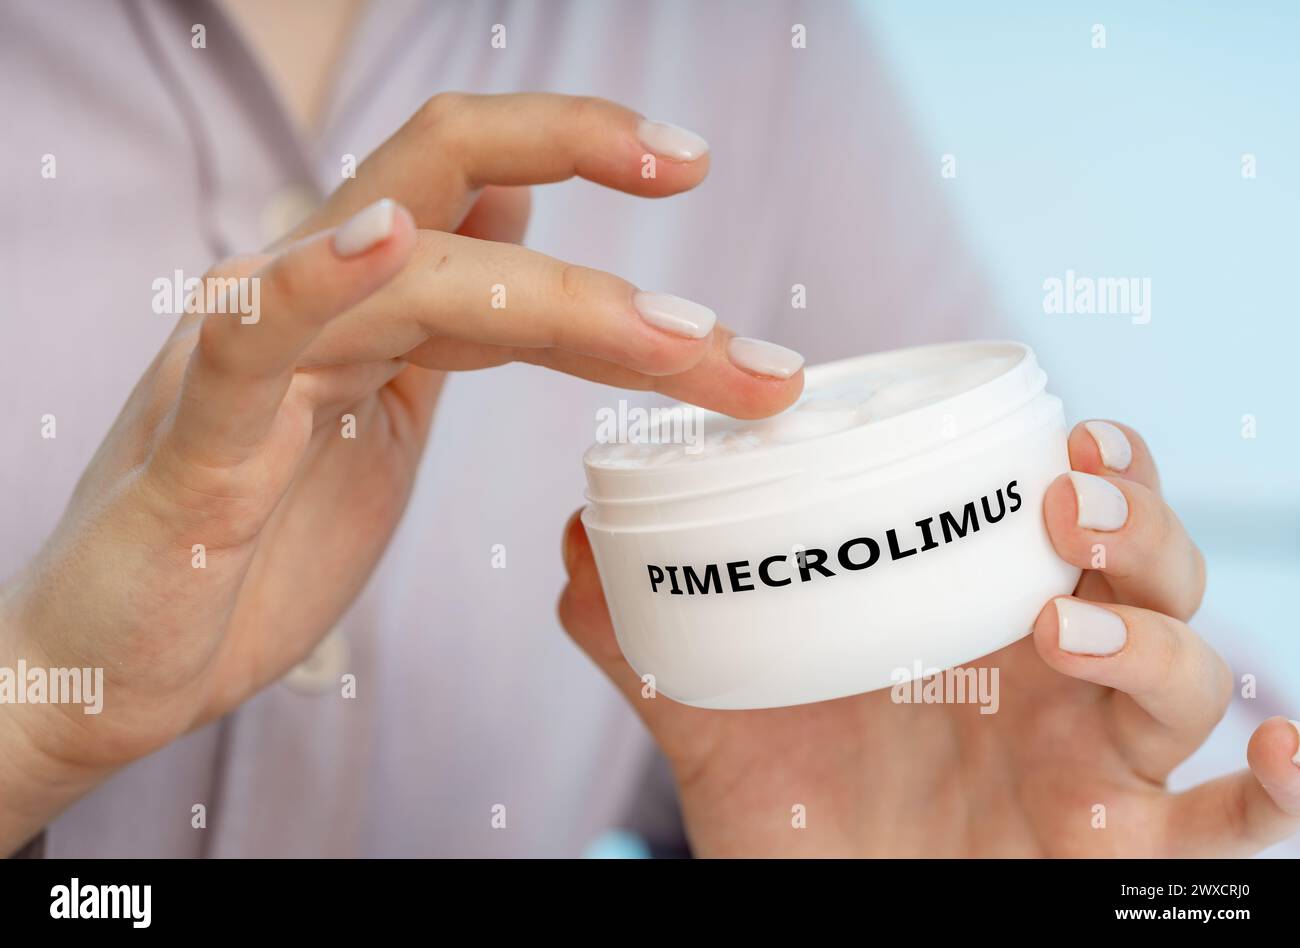 Pimecrolimus-medizinische Creme, konzeptuelles Bild. Eine immunsuppressive Creme zur Behandlung von Ekzemen und zur Reduzierung von Entzündungen durch Modulierung der Immunantwort. Stockfoto